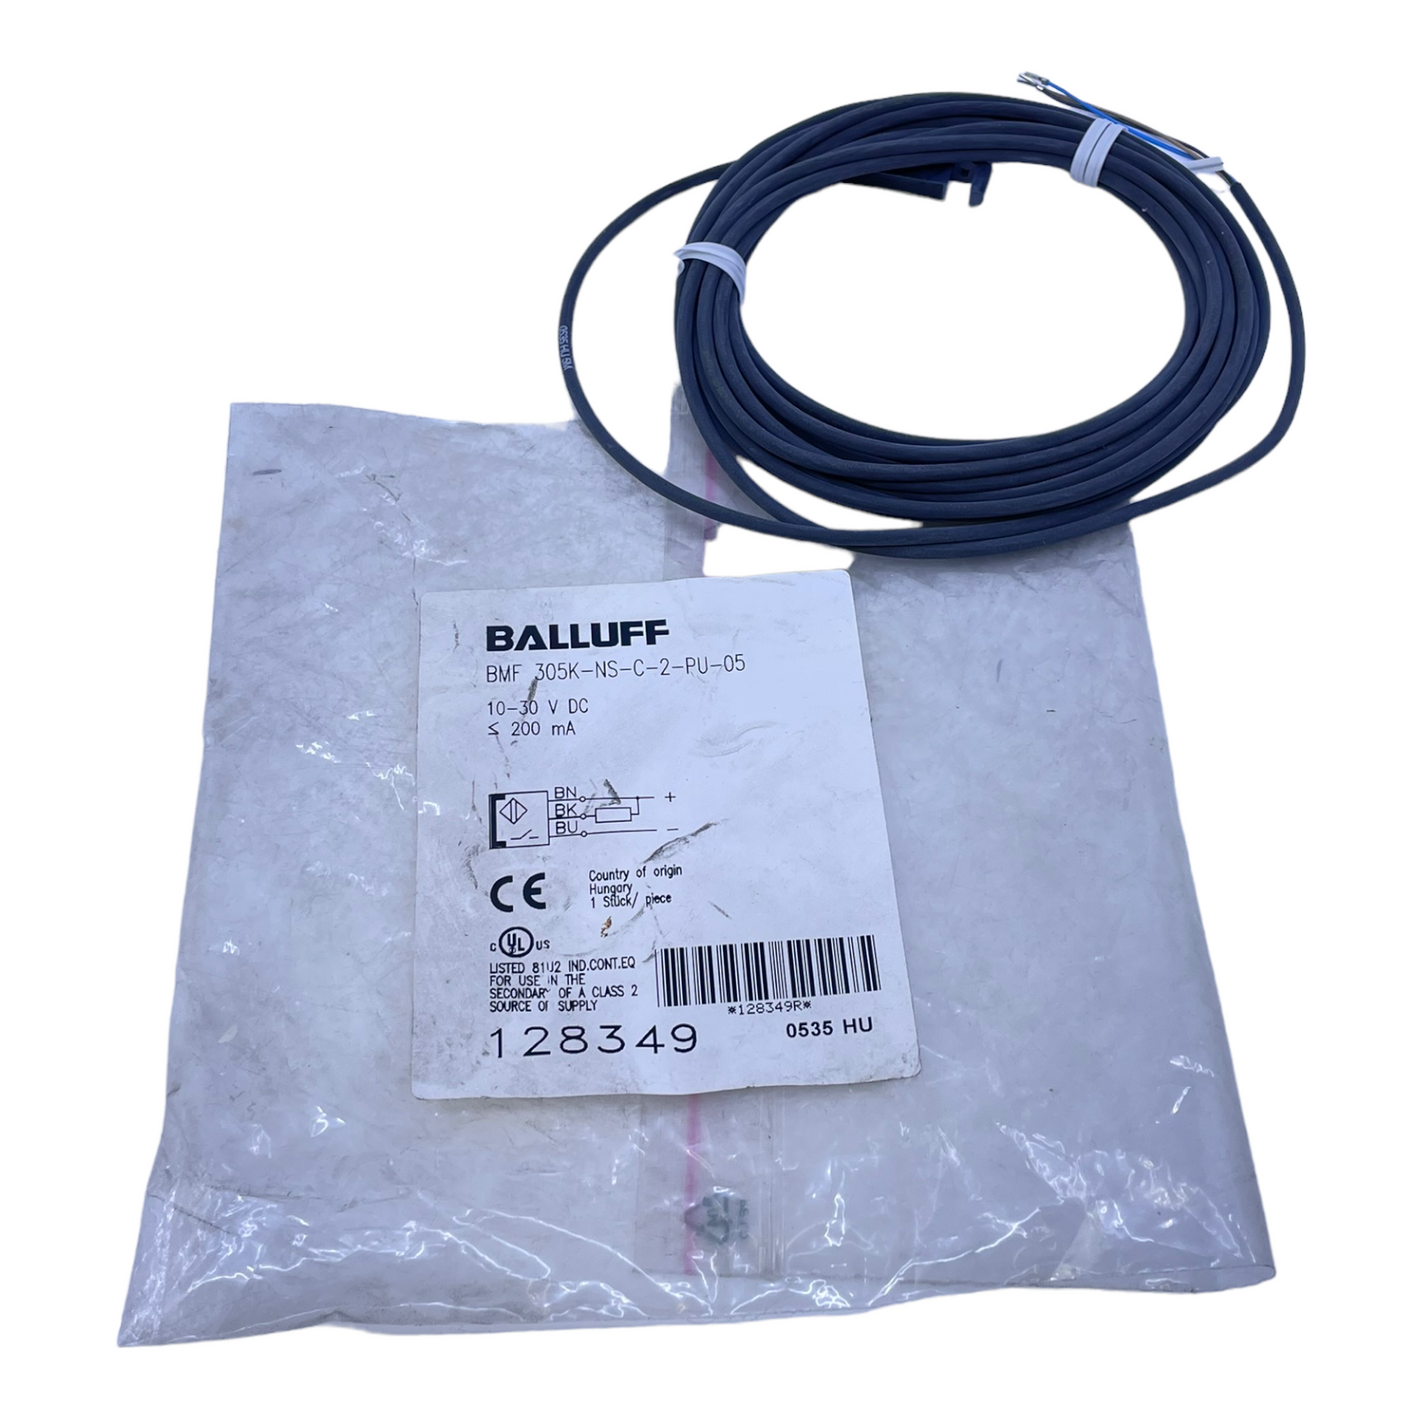 Balluff BMF 305K-NS-C-2-PU-05 magnetic field sensor 10…30V DC 200mA 